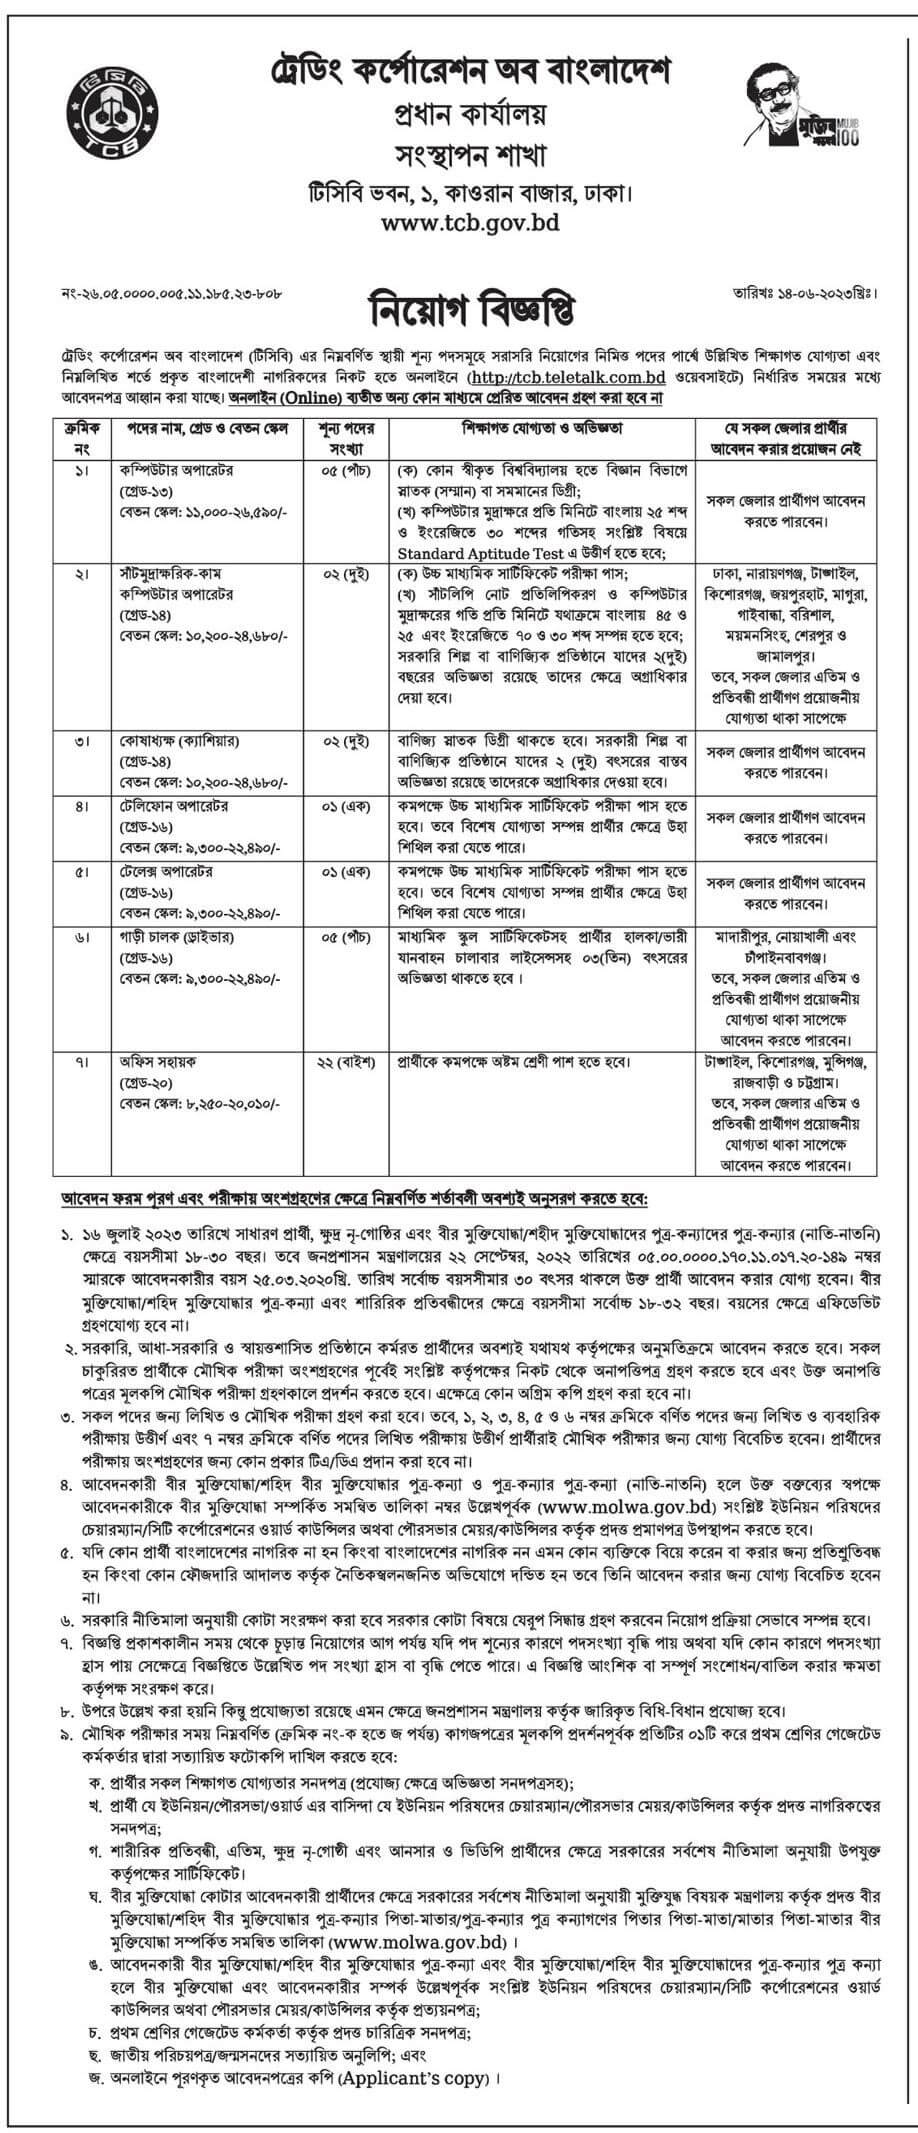 ট্রেডিং কর্পোরেশন অব বাংলাদেশ (টিসিবি) নিয়োগ বিজ্ঞপ্তি ২০২৩-৩৮ টি শূন্য পদে নিয়োগ দেবে | Trading Corporation of Bangladesh (TCB) recruitment circular 2023-38 will recruit vacant posts